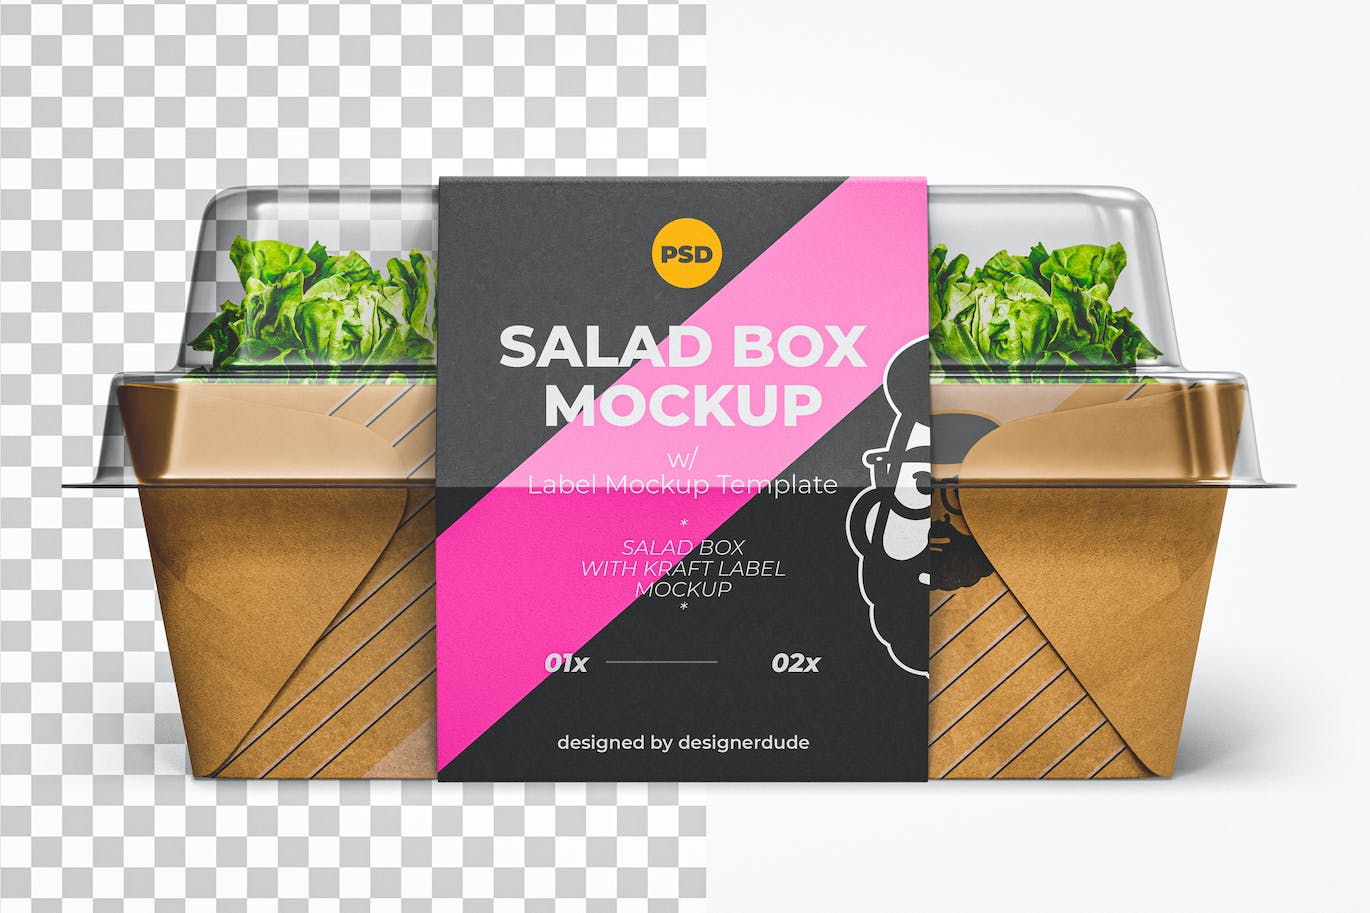 沙拉食品包装盒设计样机模板 Salad Box Mockup Template 样机素材 第1张